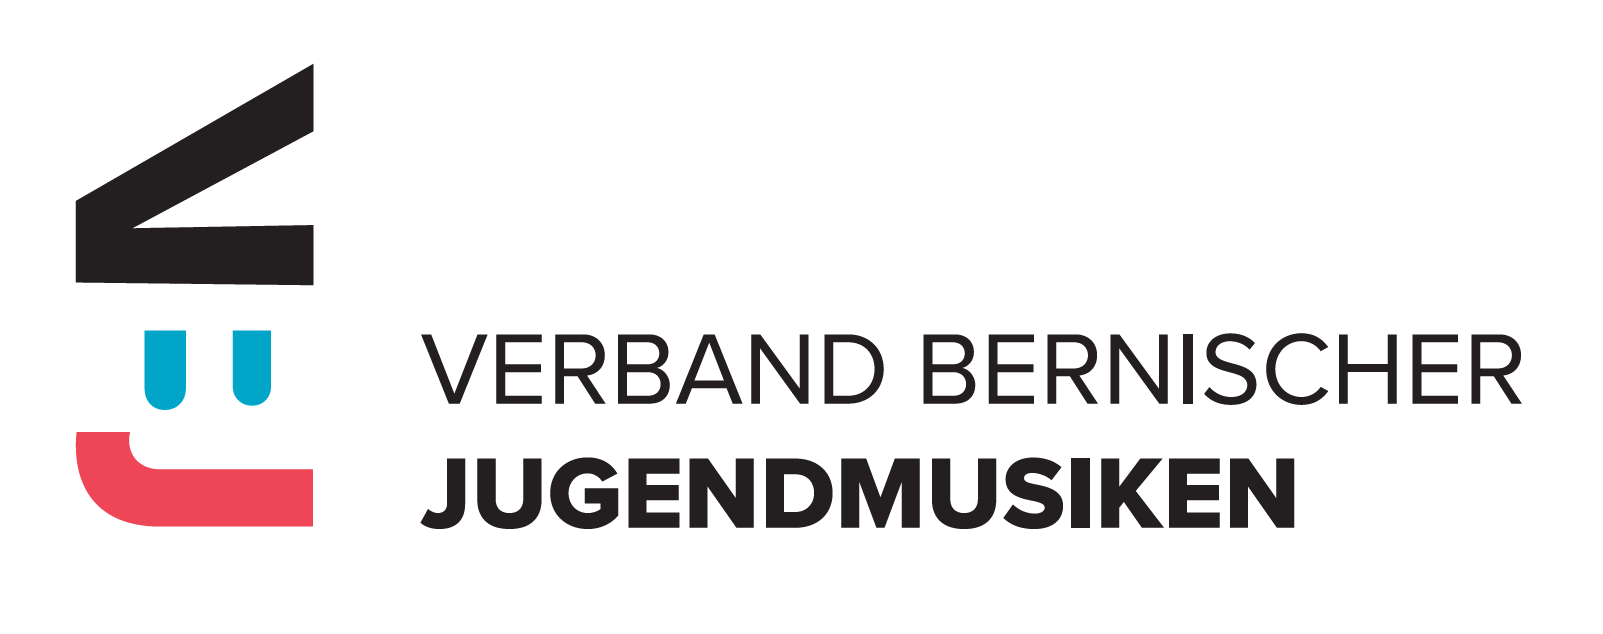 Verband Bernischer Jugendmusiken